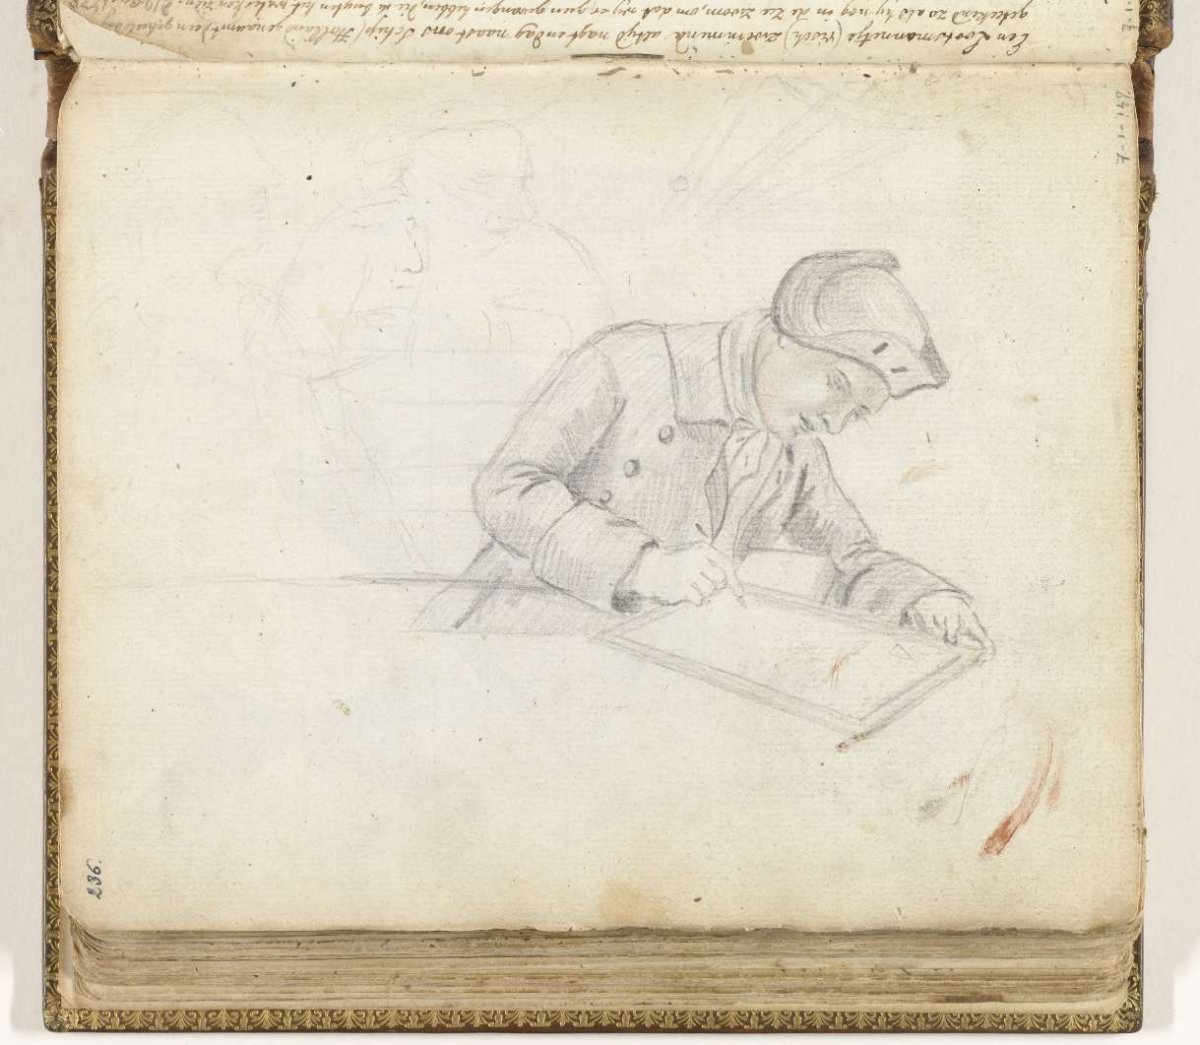 Officier schrijft logboek, Jan Brandes, 1770 - 1808